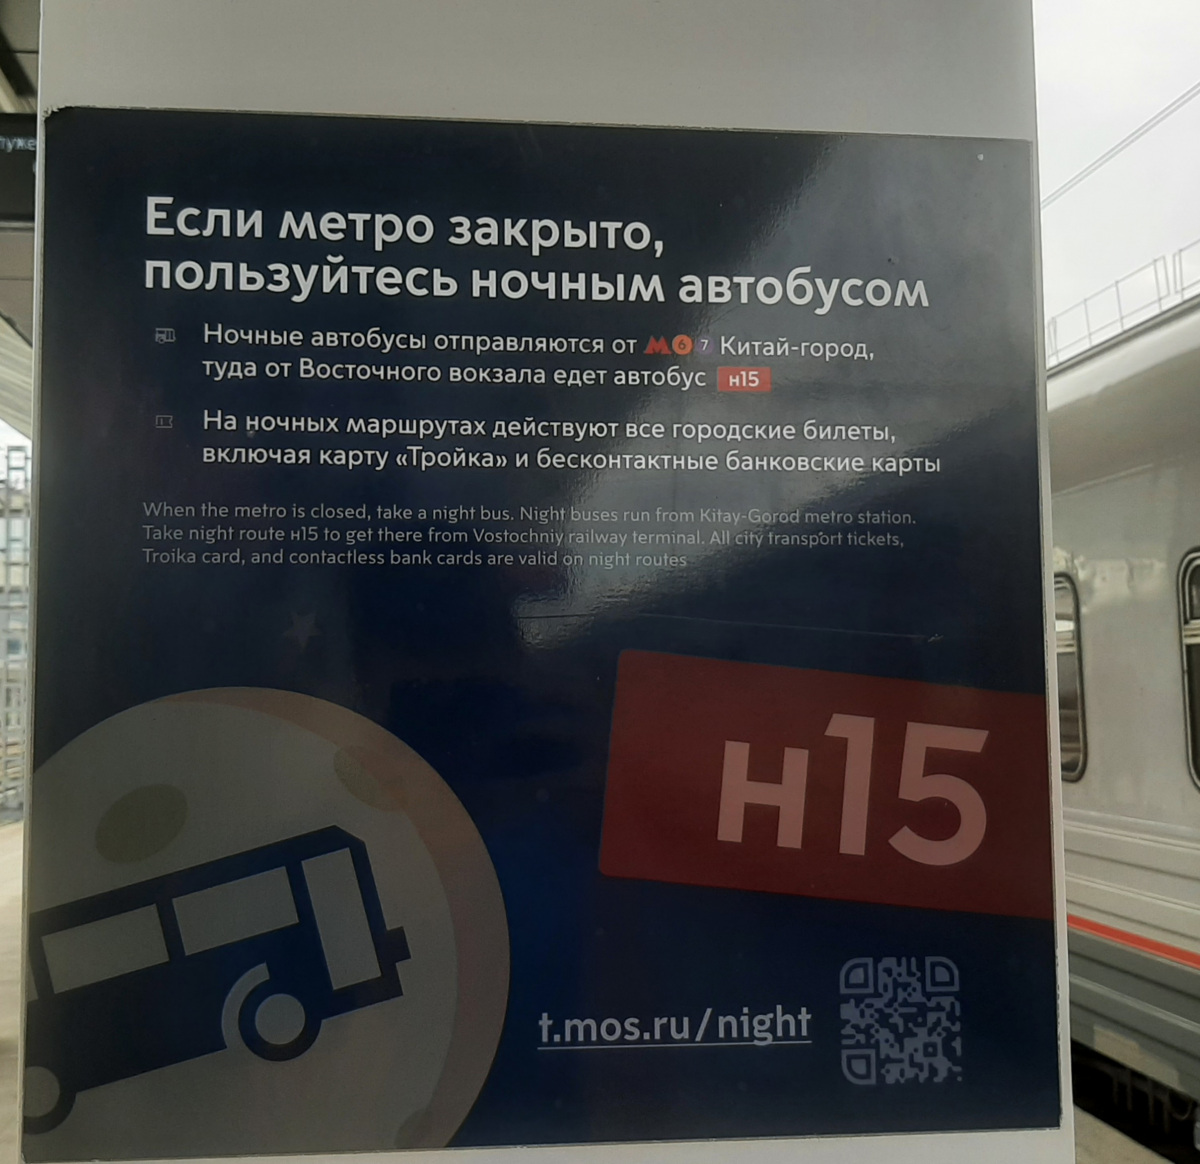 Москва. Объявление о ночном транспорте на Восточном вокзале